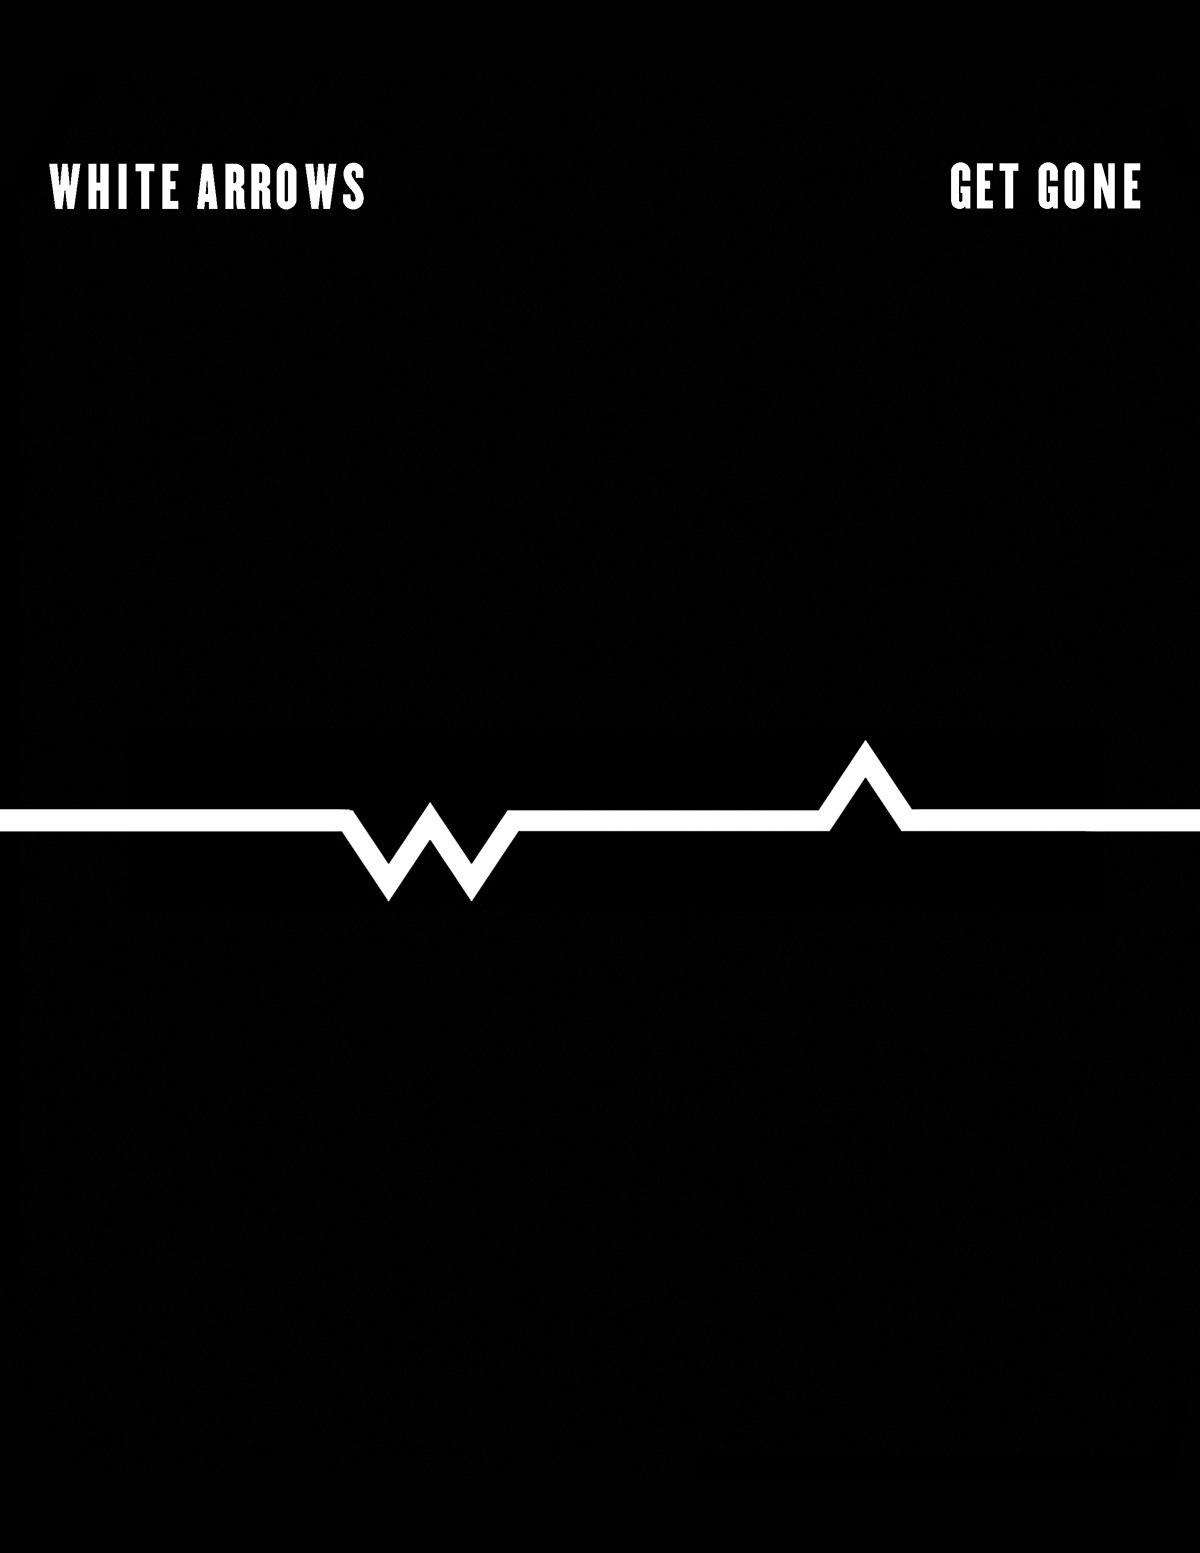 Adobe Portfolio White Arrows LP Get Gone LP CJ Reilly III ooh la la Oohlalarecords